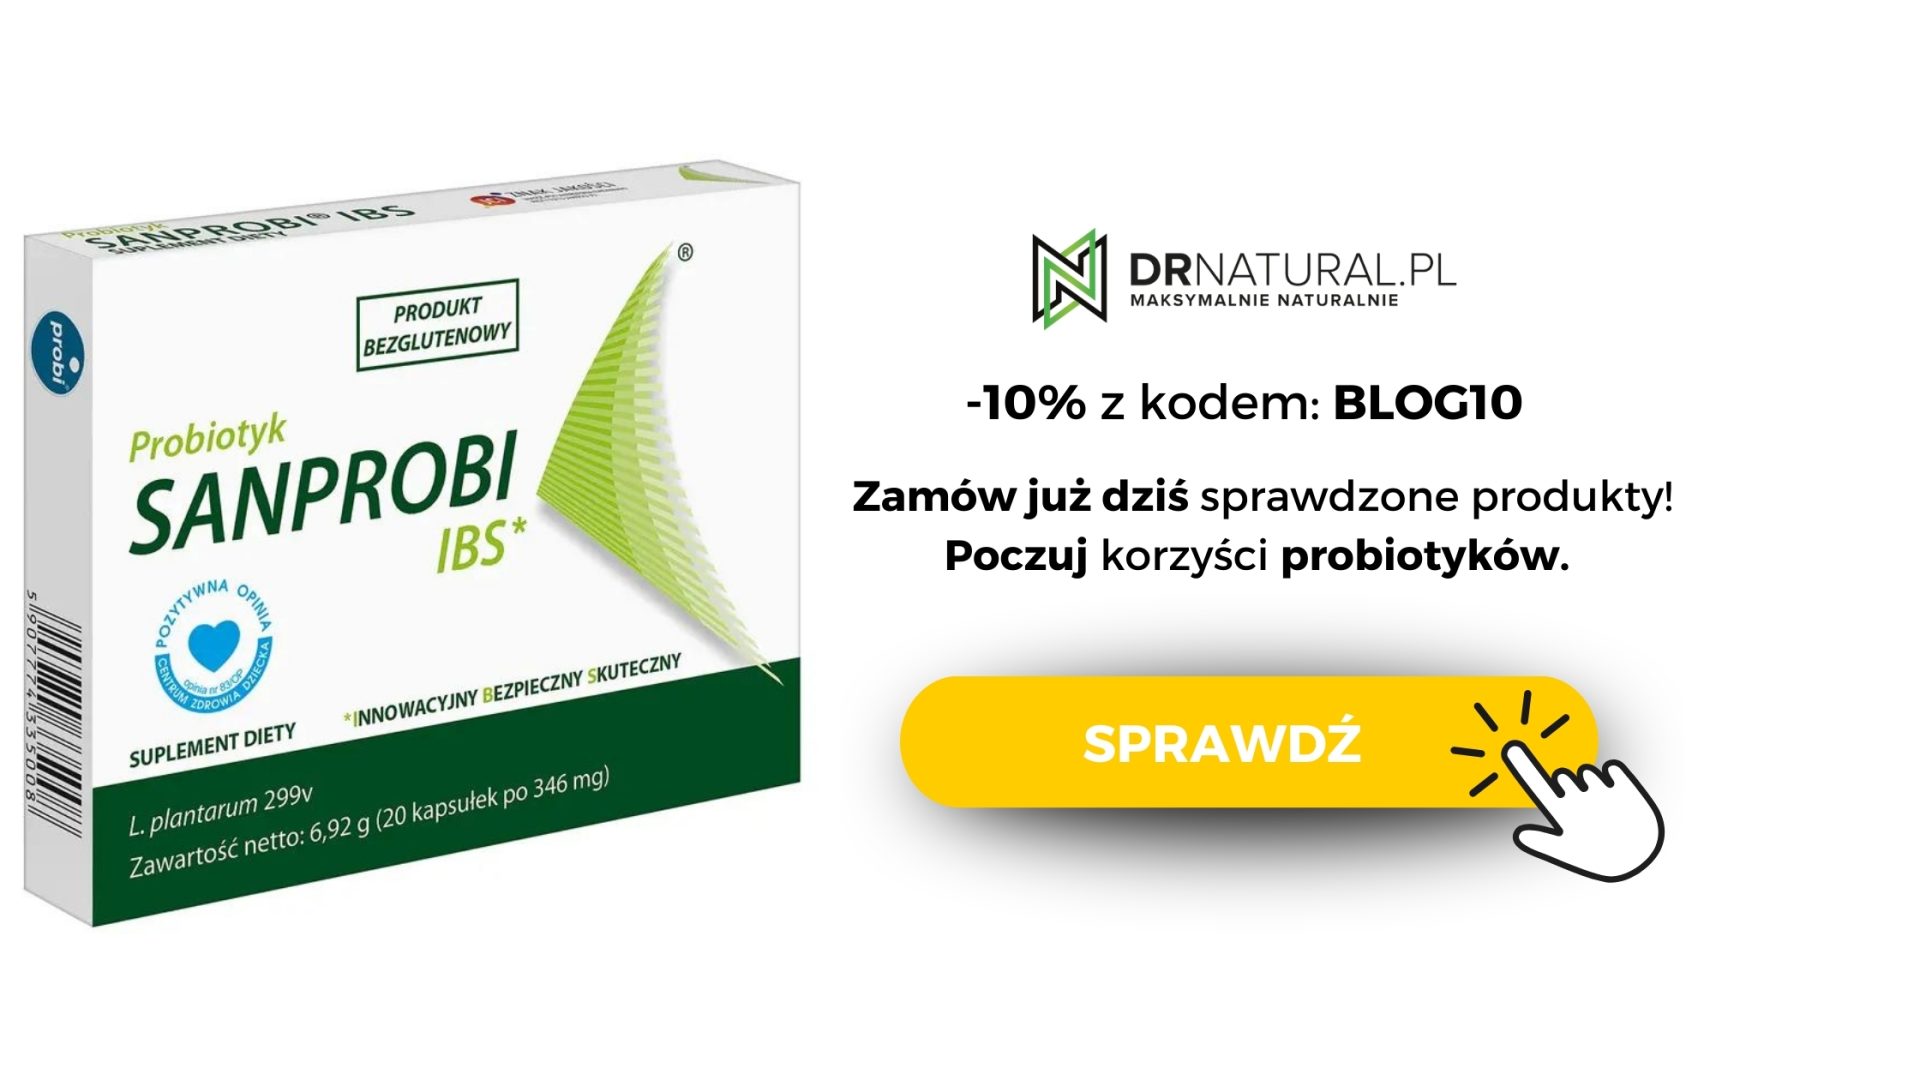 Butelka suplementu Sanprobi - IBS, z 10% kodem rabatowym BLOG10 - zamów już dziś na drnatural.pl i poczuj korzyści probiotyków. Przycisk pomarańczowy z napisem "sprawdź" i ikona klikania myszką